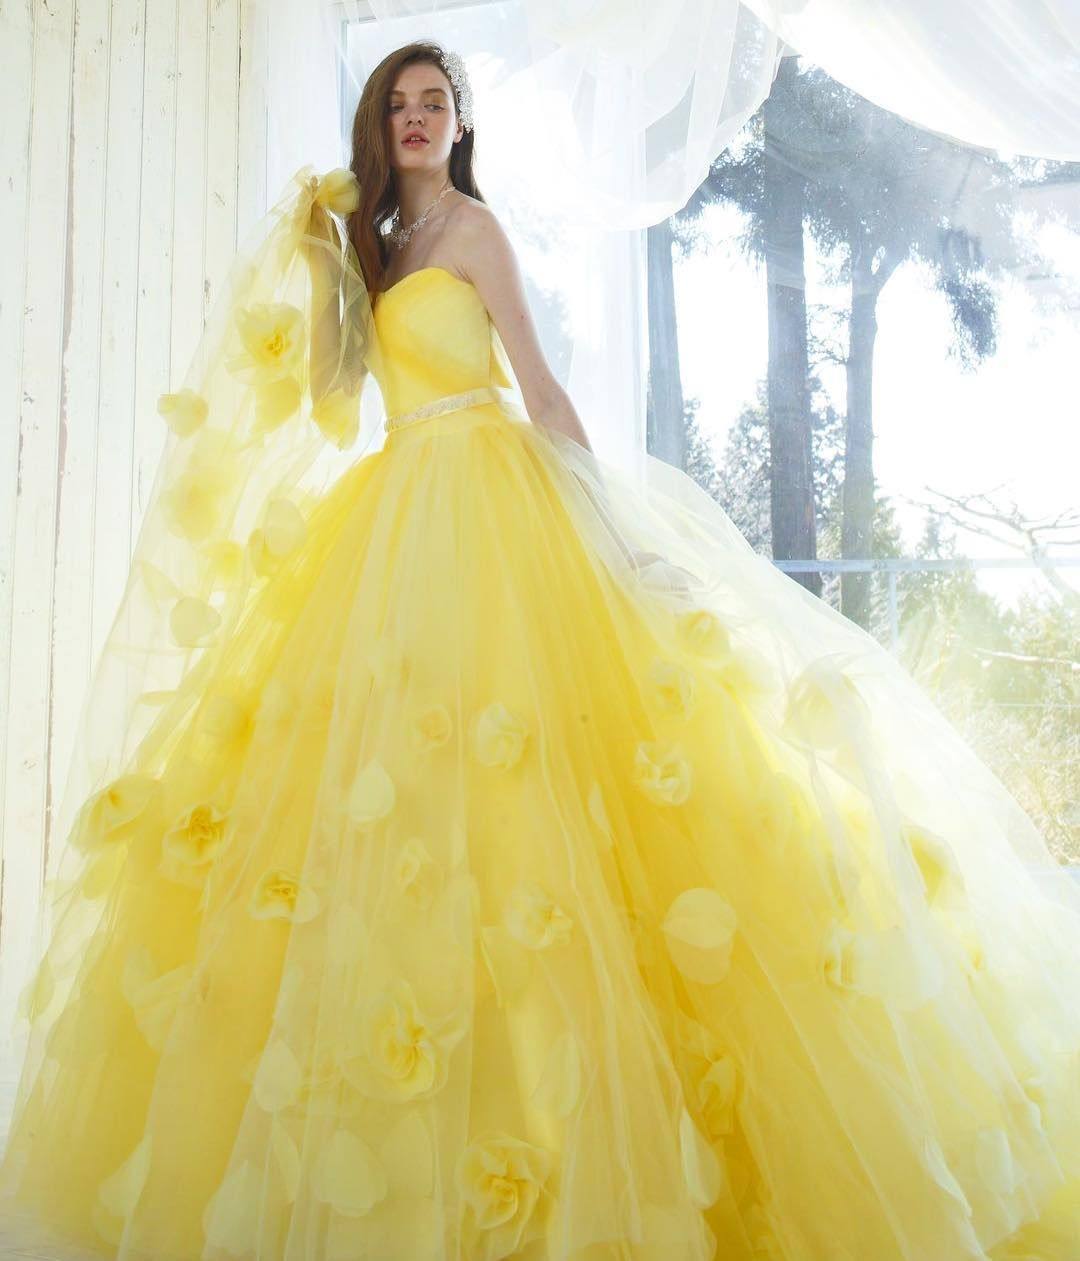 Märchenhaftes Hochzeitskleid in Gelb mit Rosen und schulterfrei für offene Brautfrisur